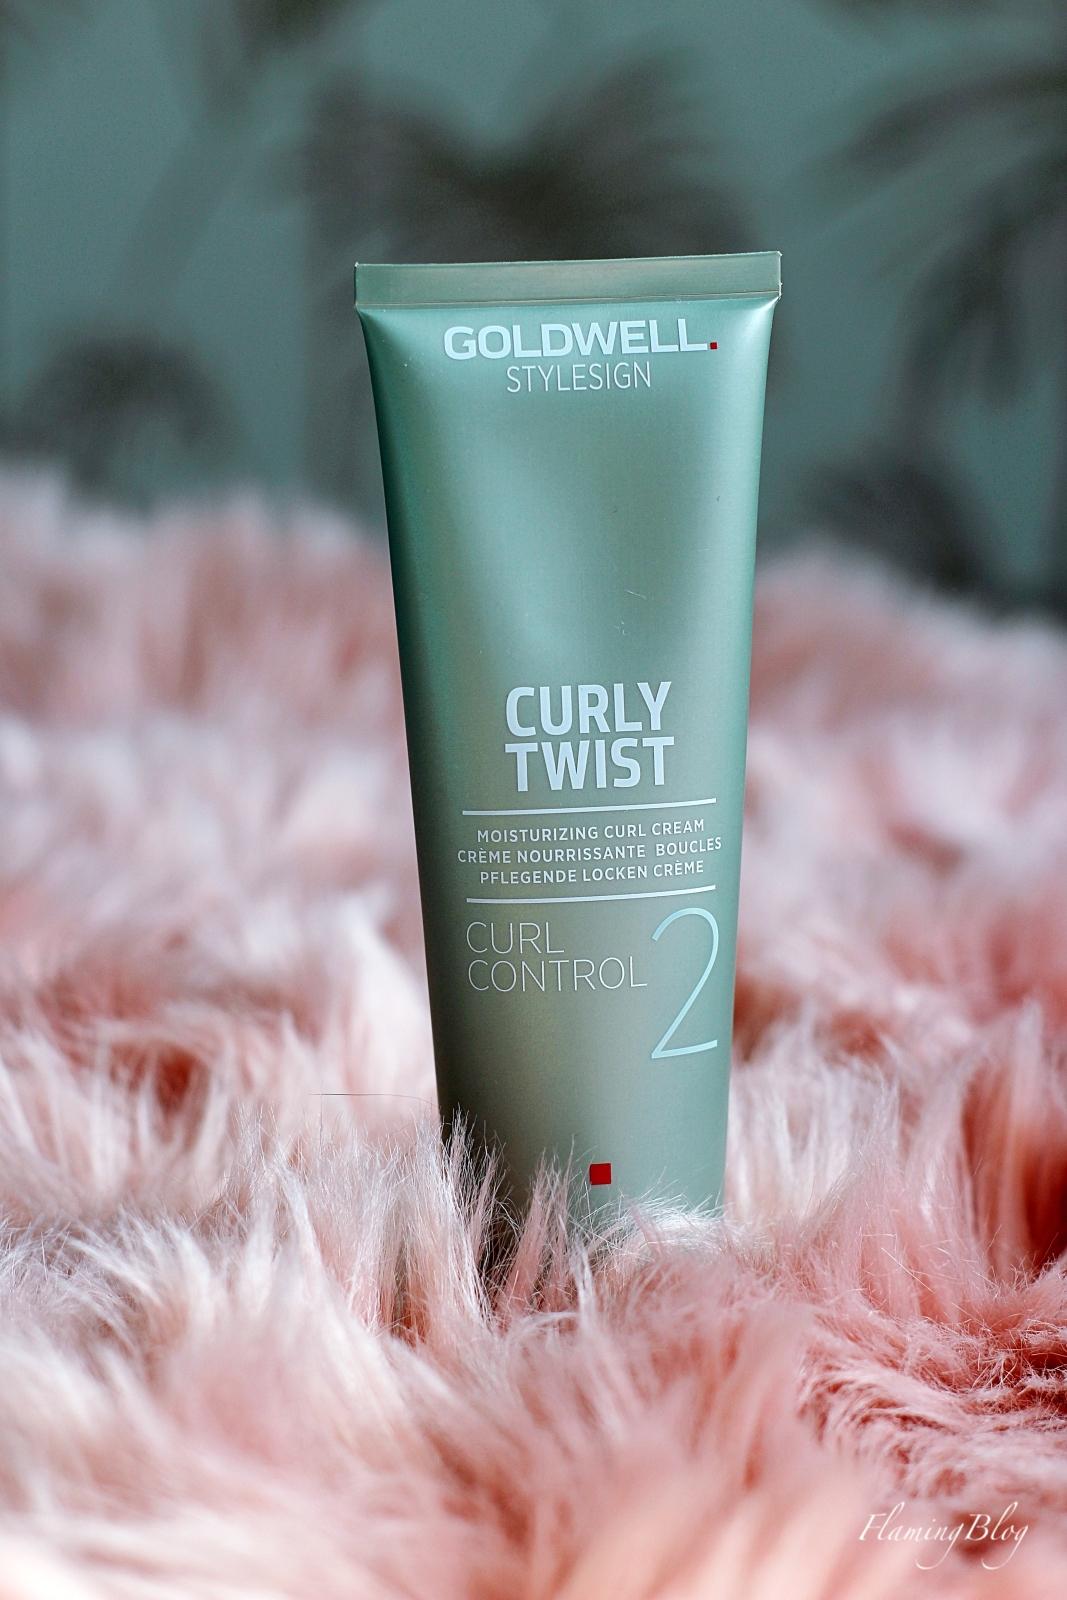 Goldwell Curly Twist Curl Control 2 opinie blog